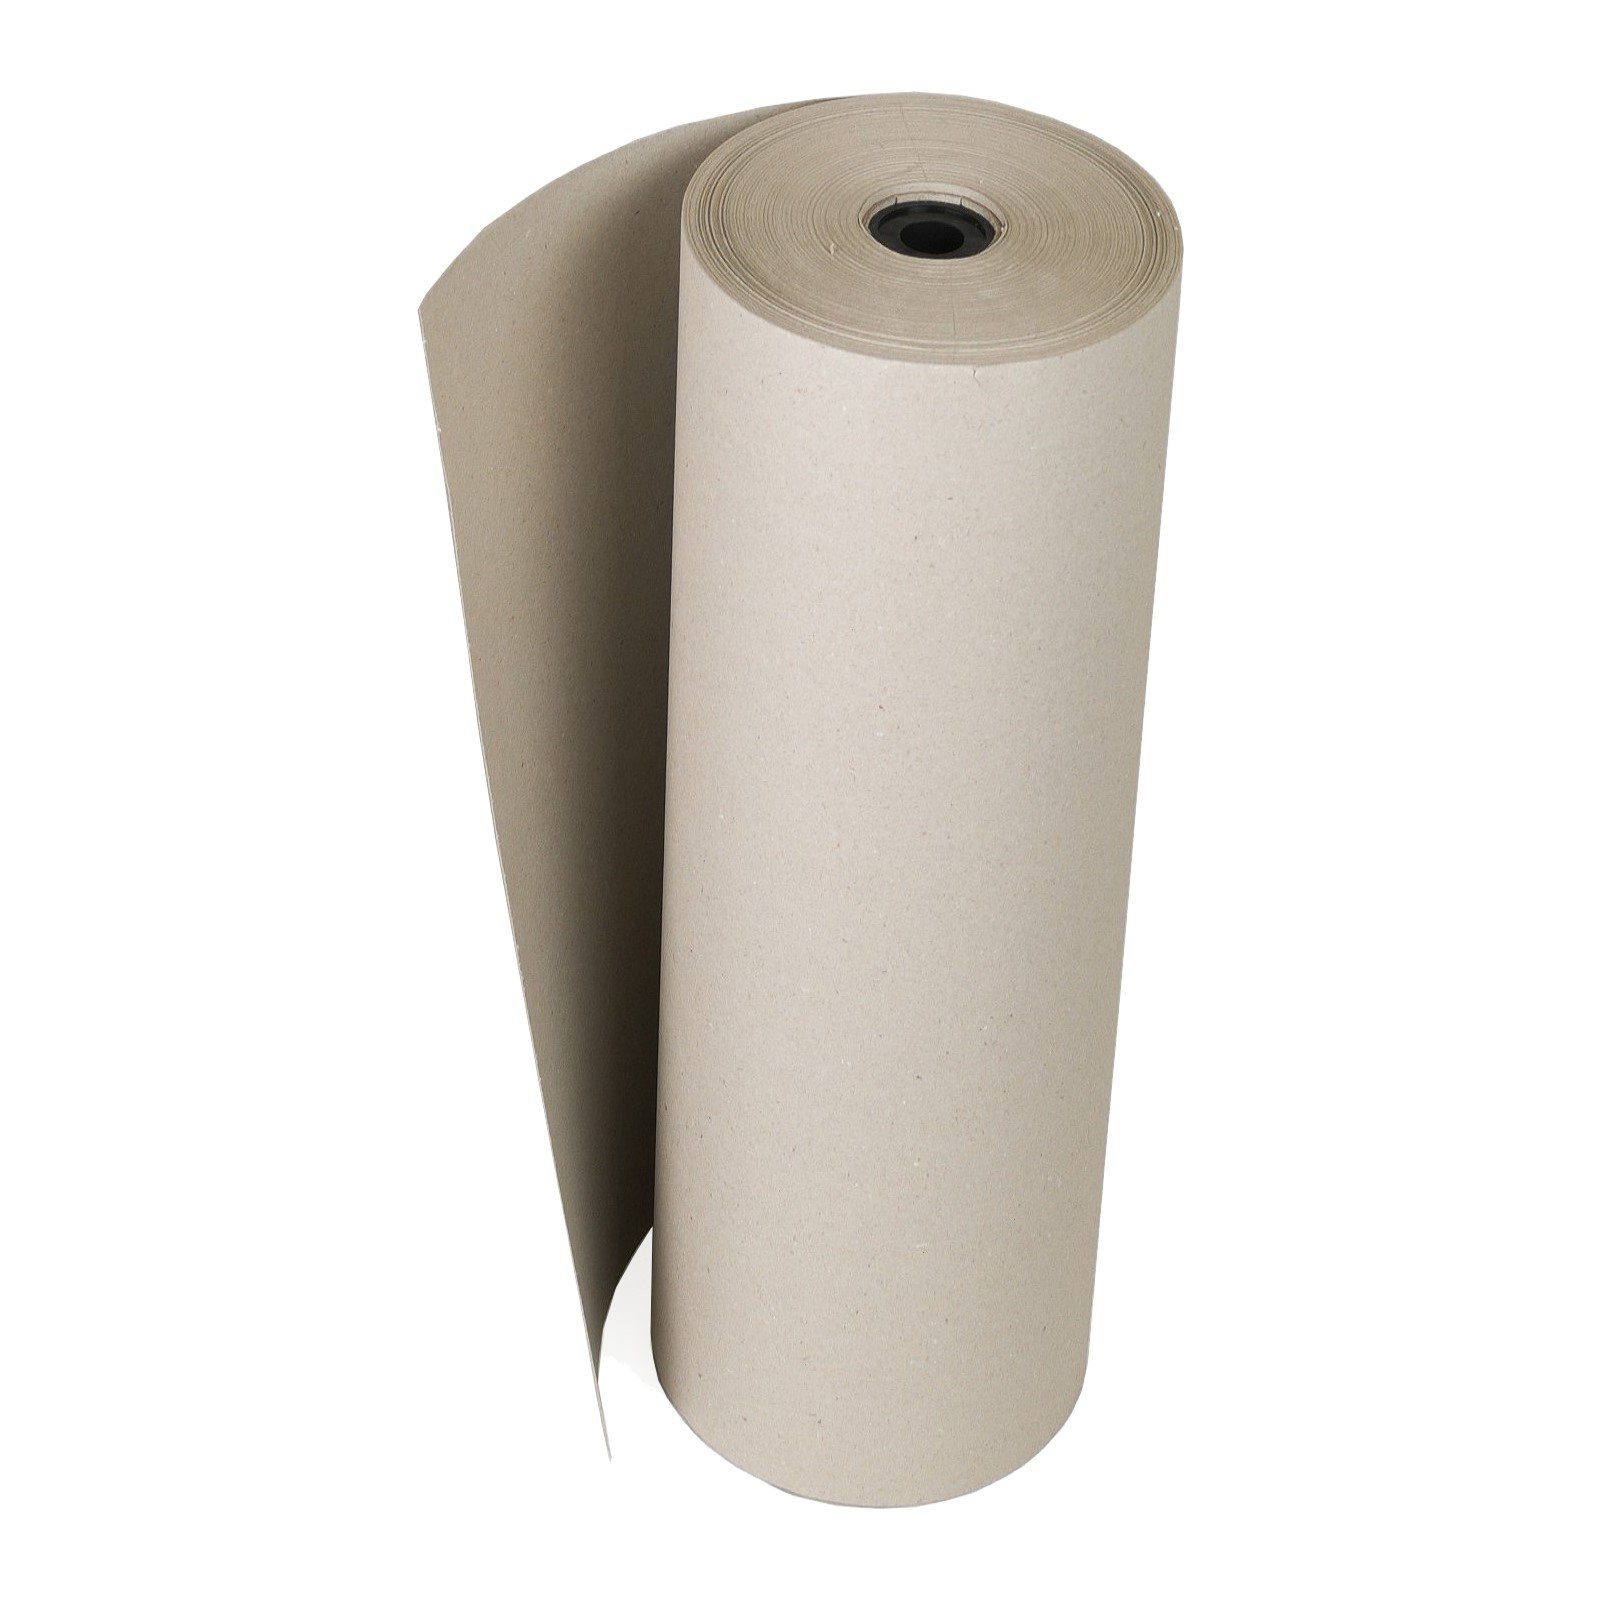 Verpackungen Füllmaterial Rollen-Schrenzpapier Grau Seidenpapier, 250m 120g/m² Packpapier KK 0,75x